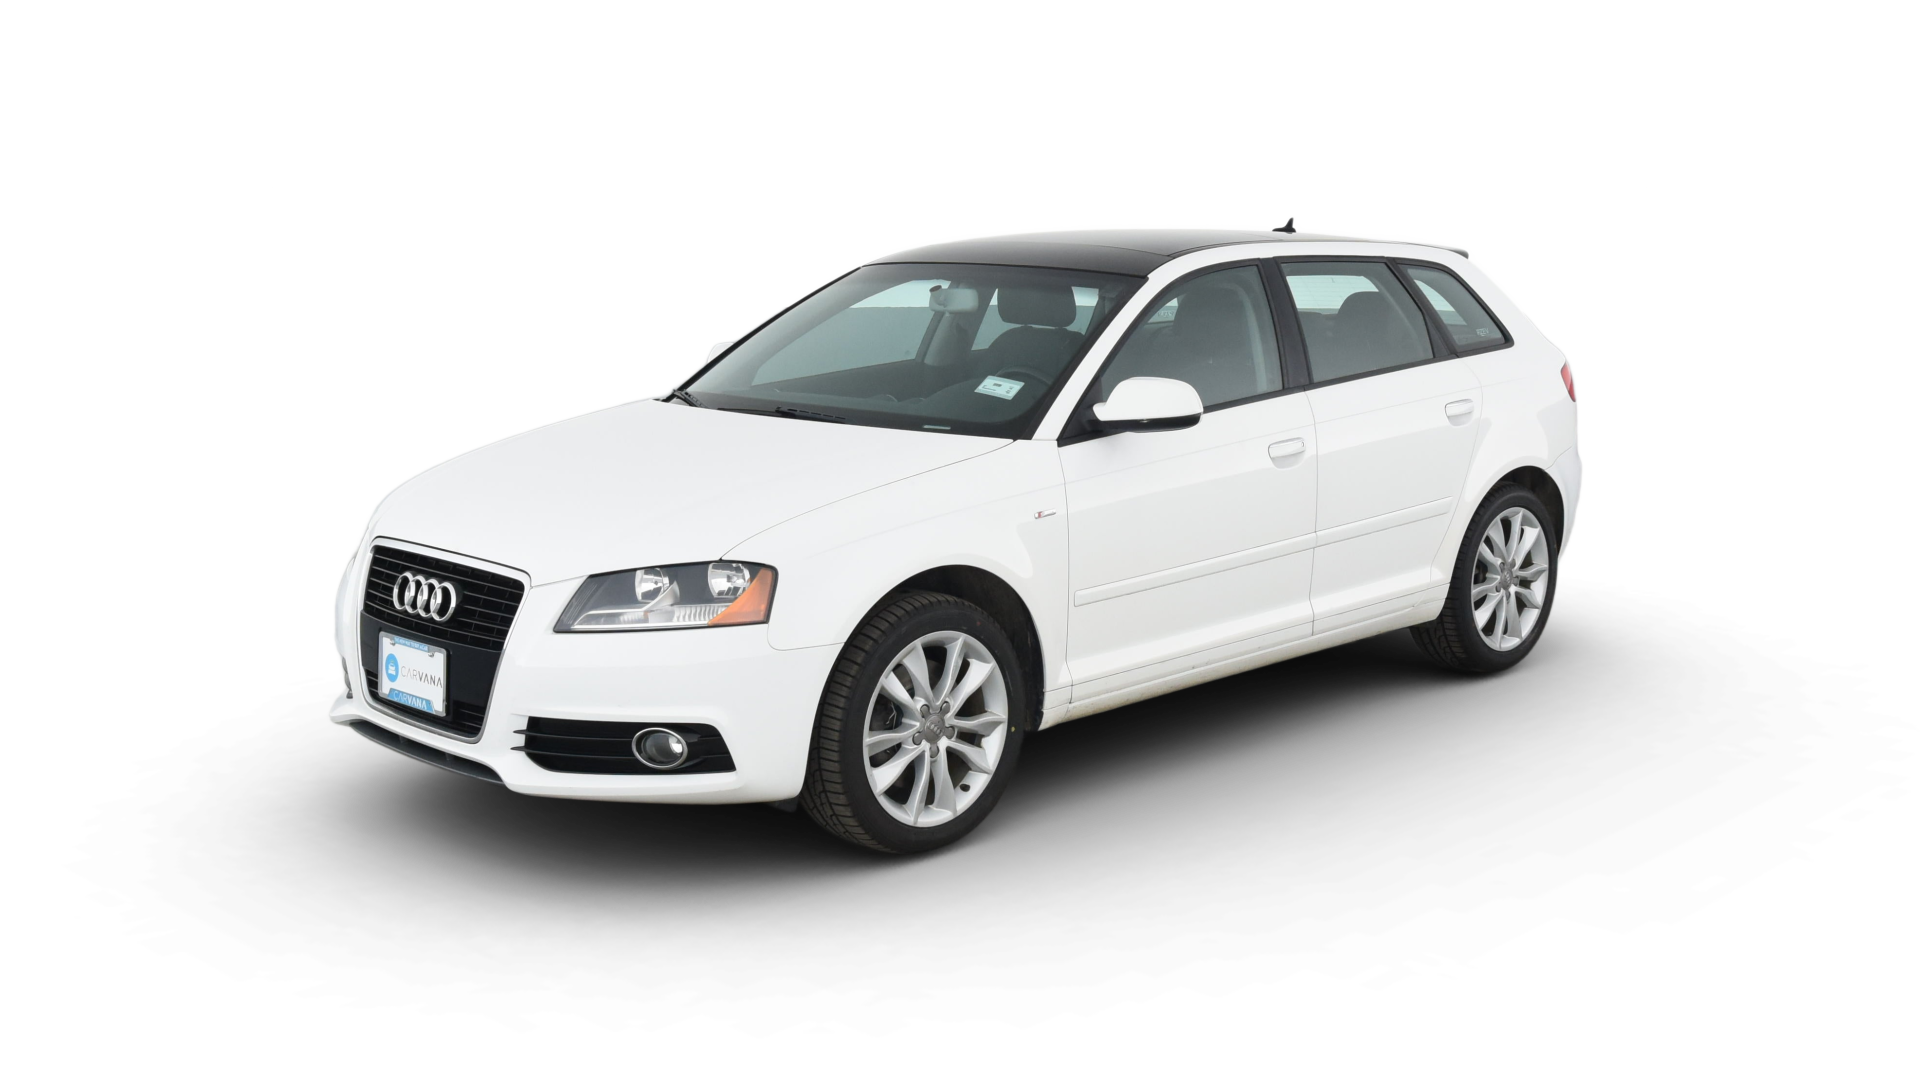 Audi A3 model image.